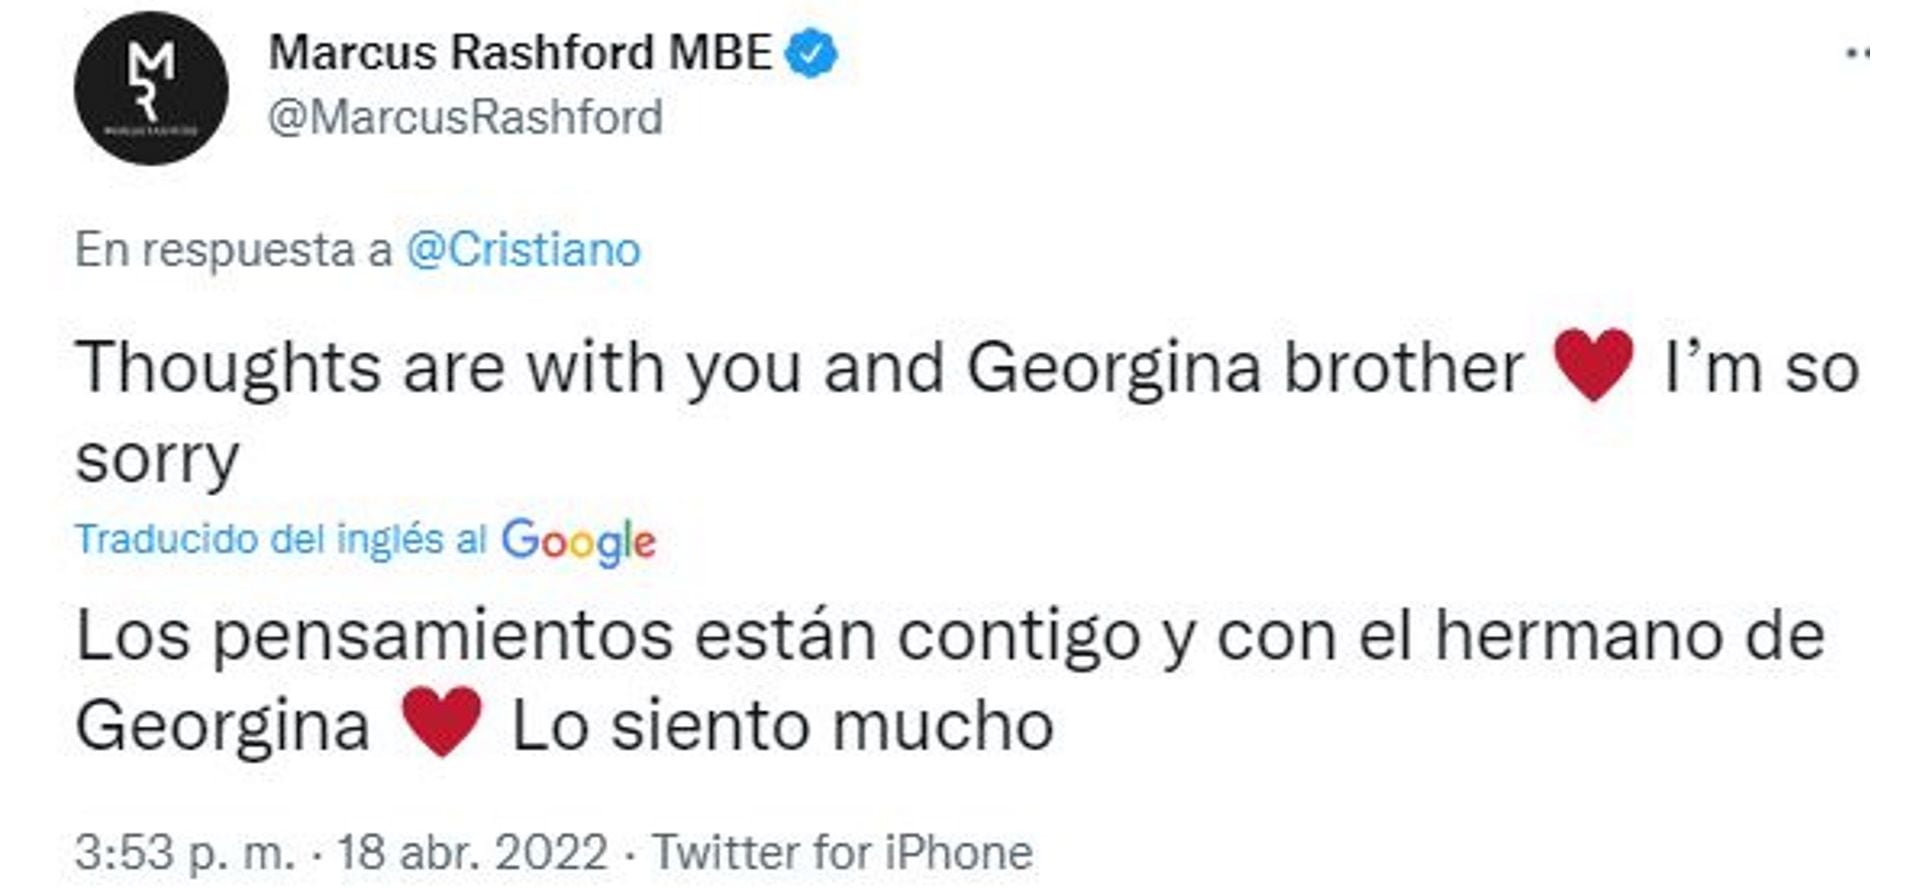 Marcus Rashford, compañero de Cristiano Ronaldo en el Manchester United, dejó un sentido mensaje en Twitter